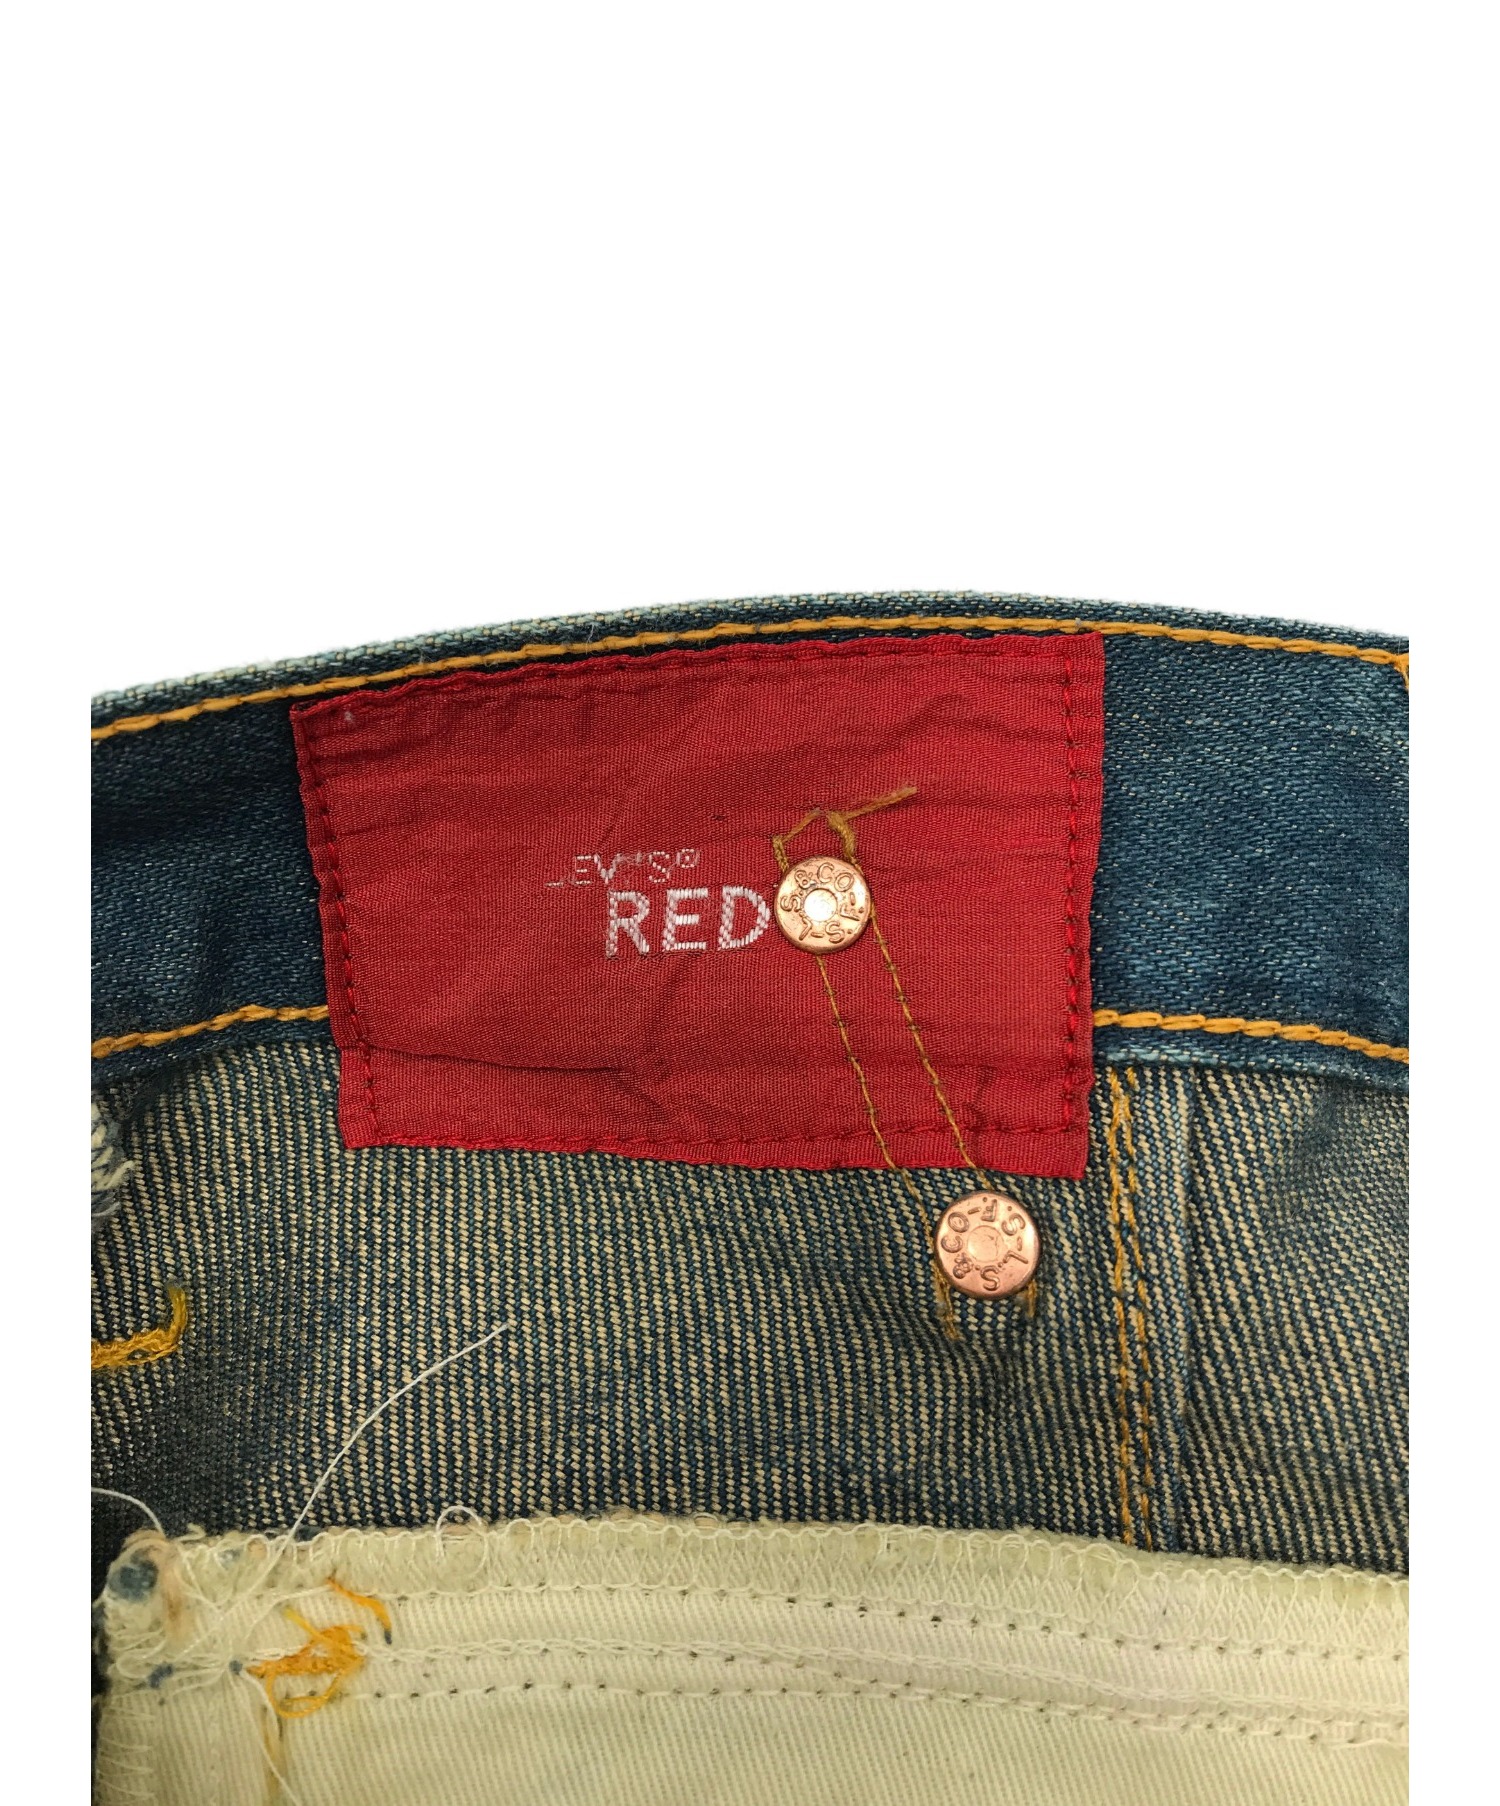 Le´vis RED 立体縫製 イタリア製 WPL-423 リーバイス-